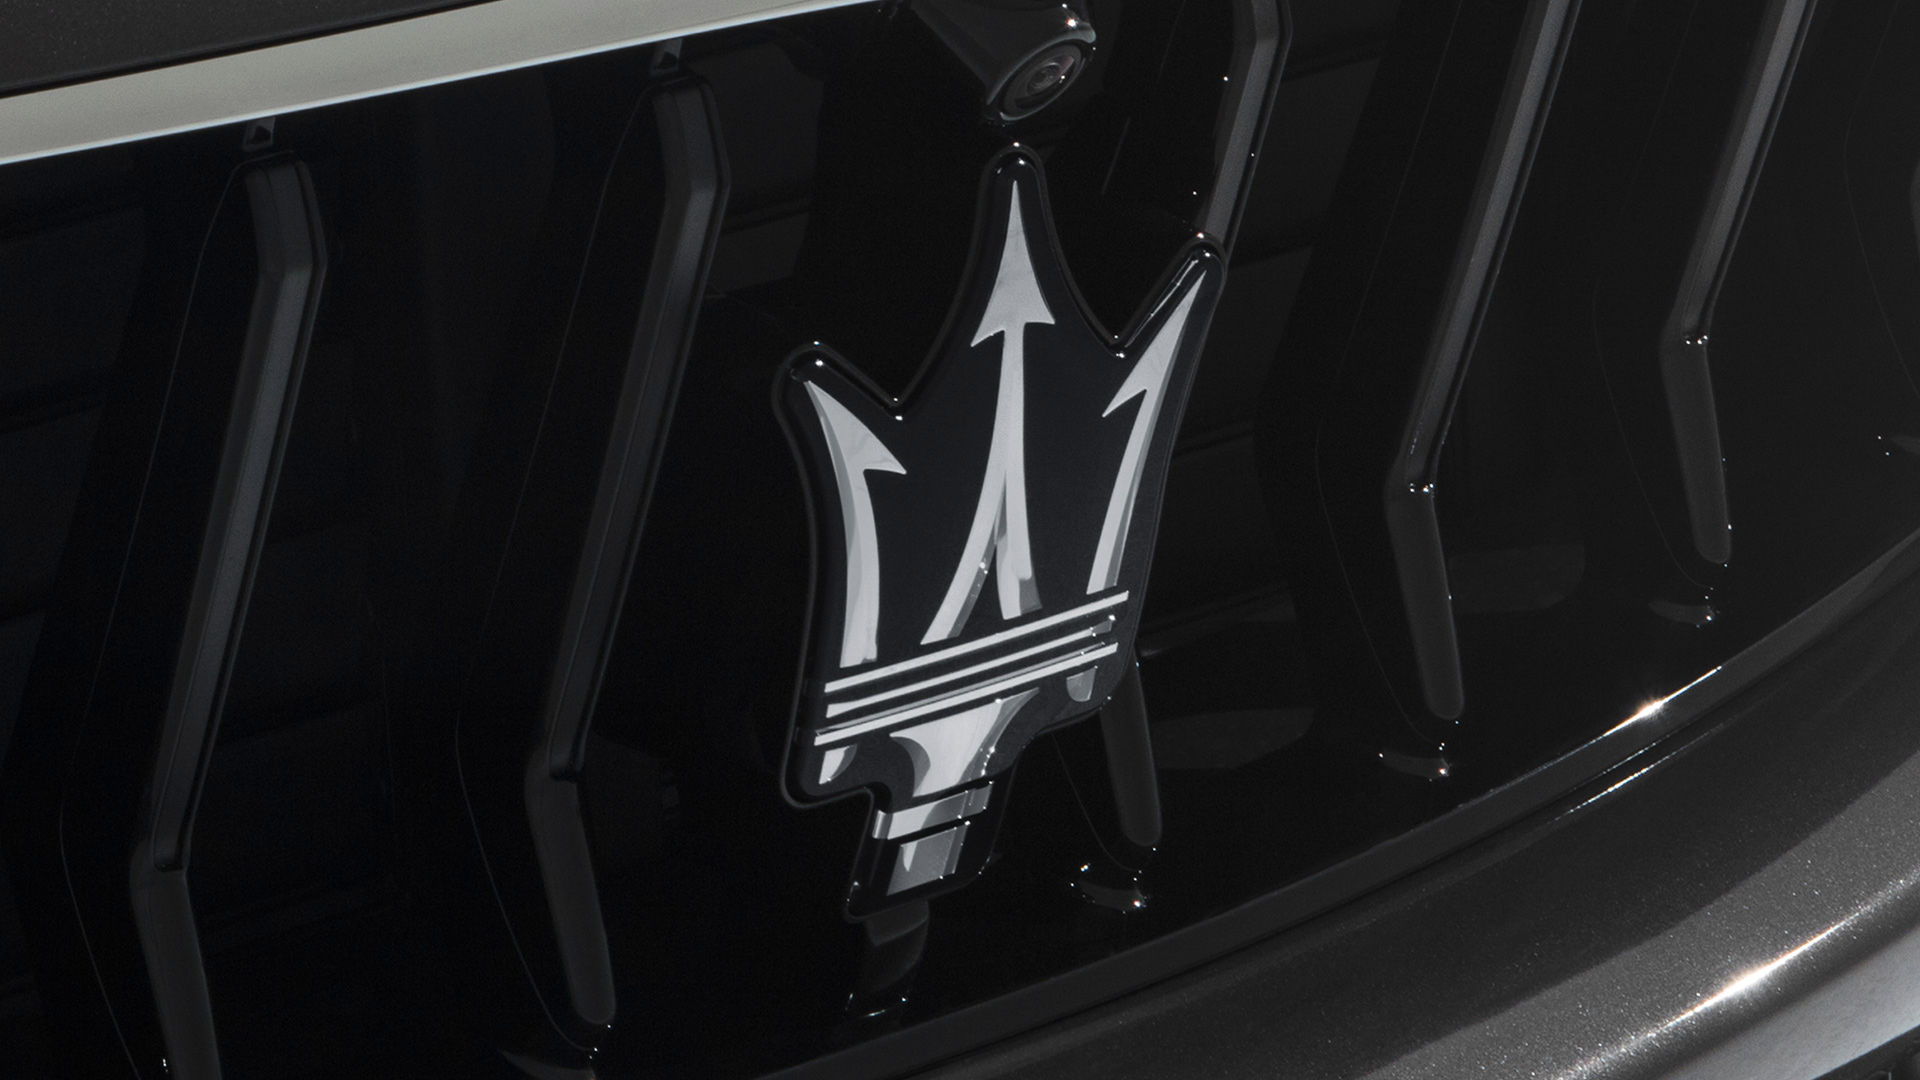 Dettaglio del tridente Maserati sulla griglia frontare